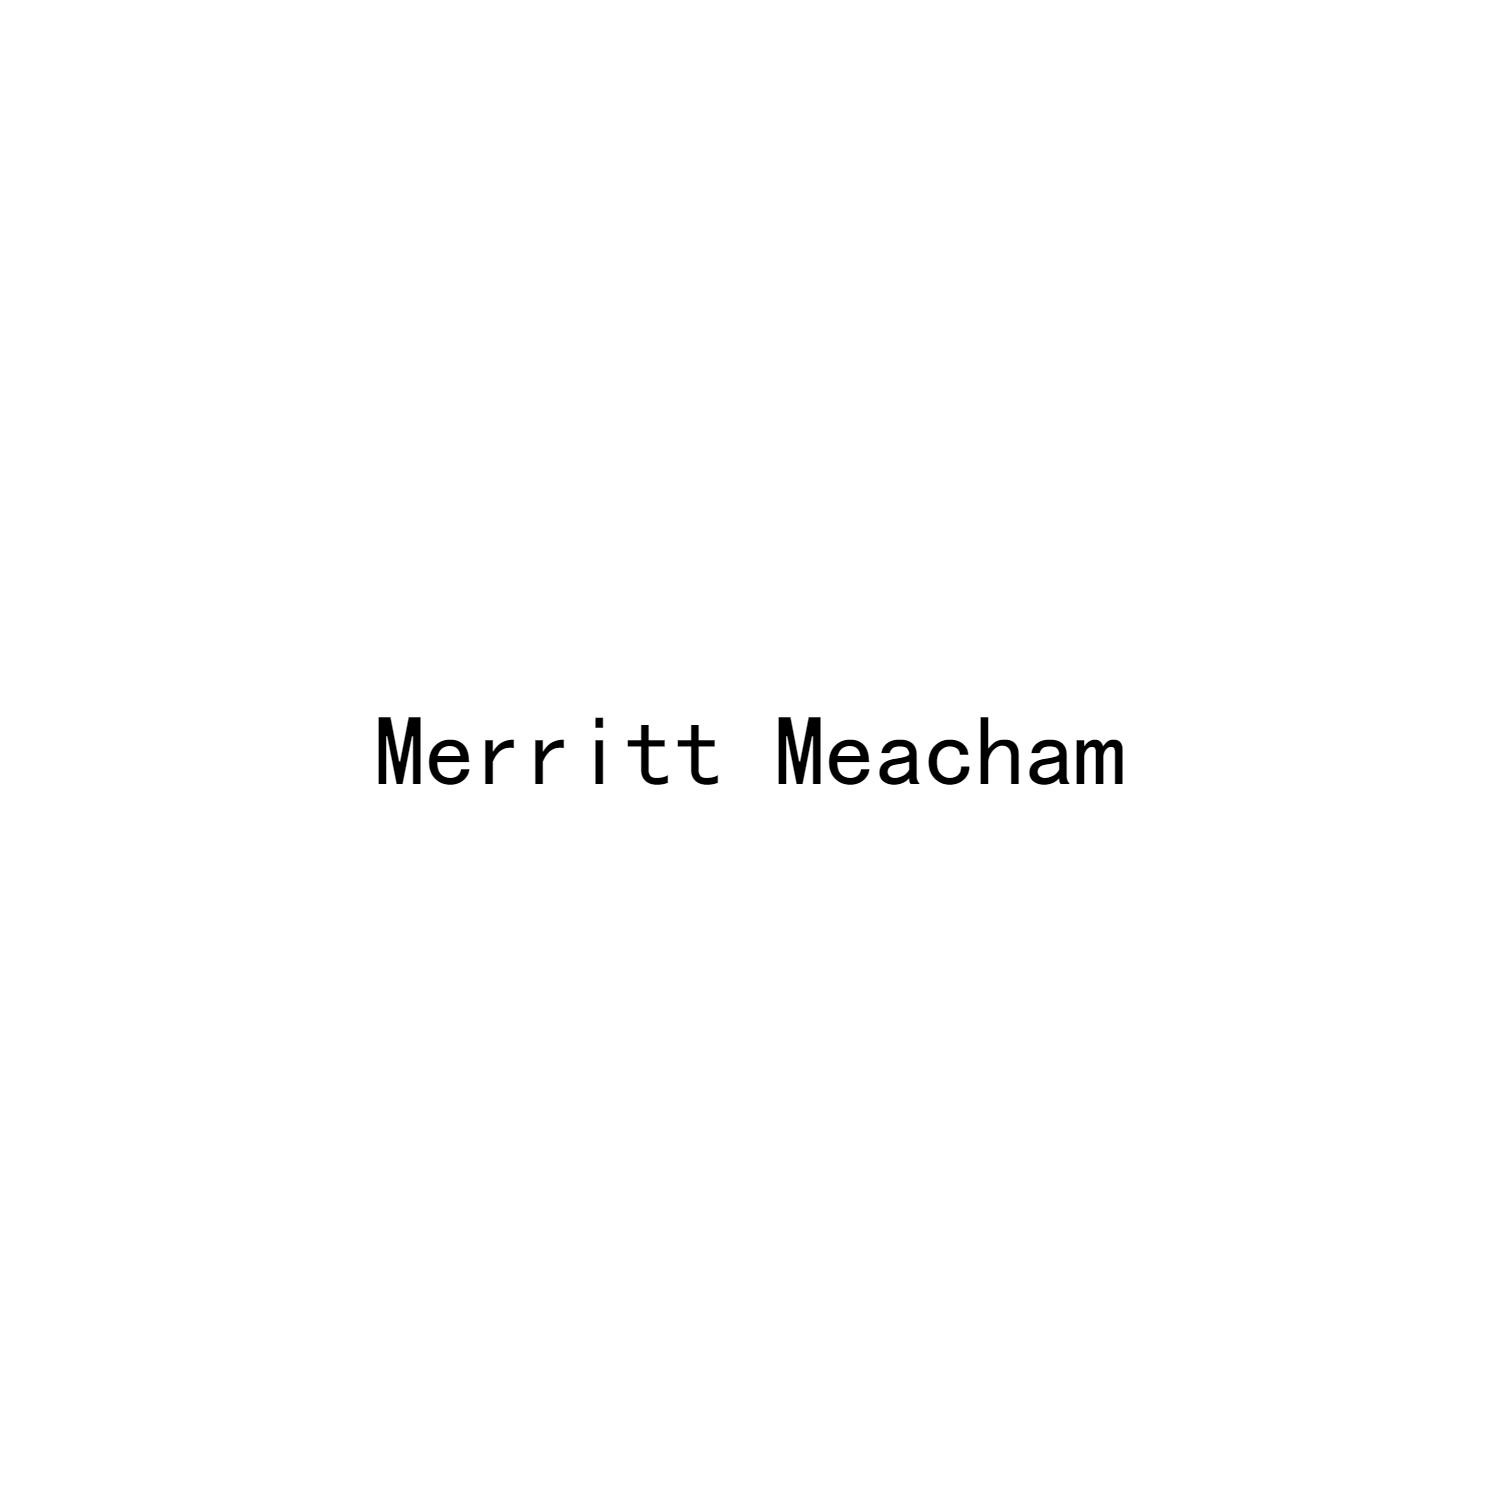 MERRITT MEACHAM